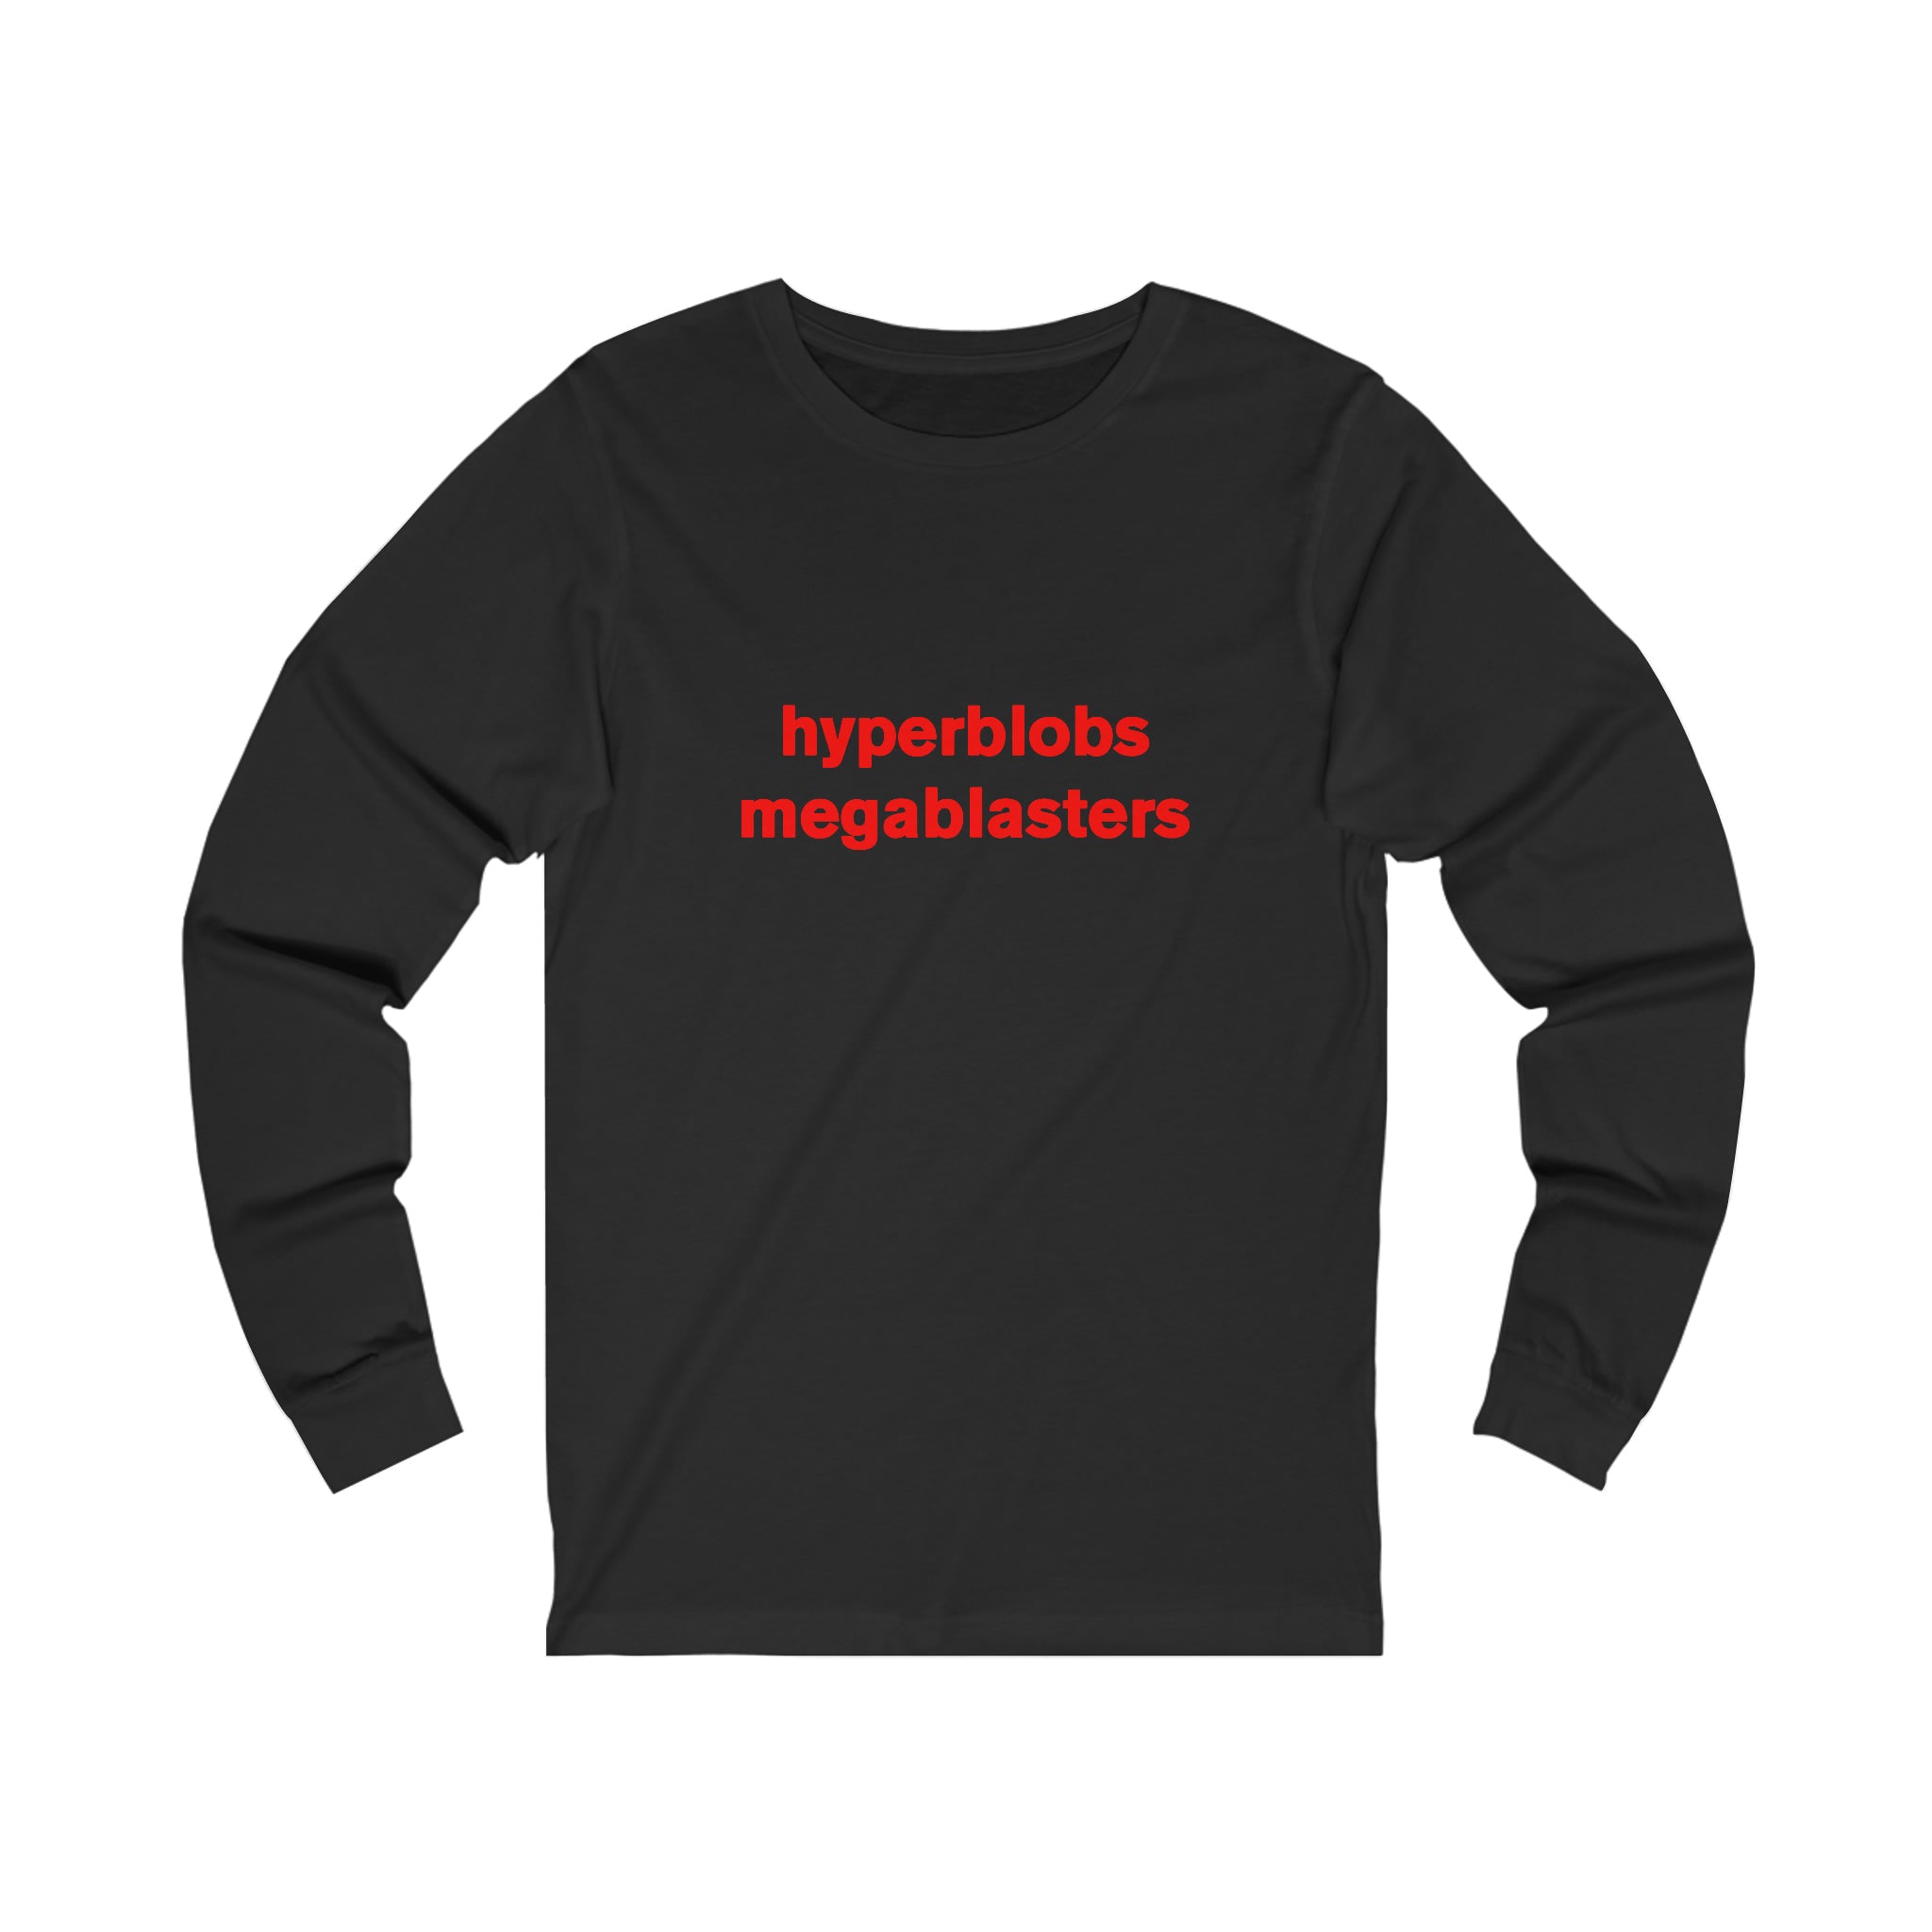 hyperblobs megablasters - long sleeve